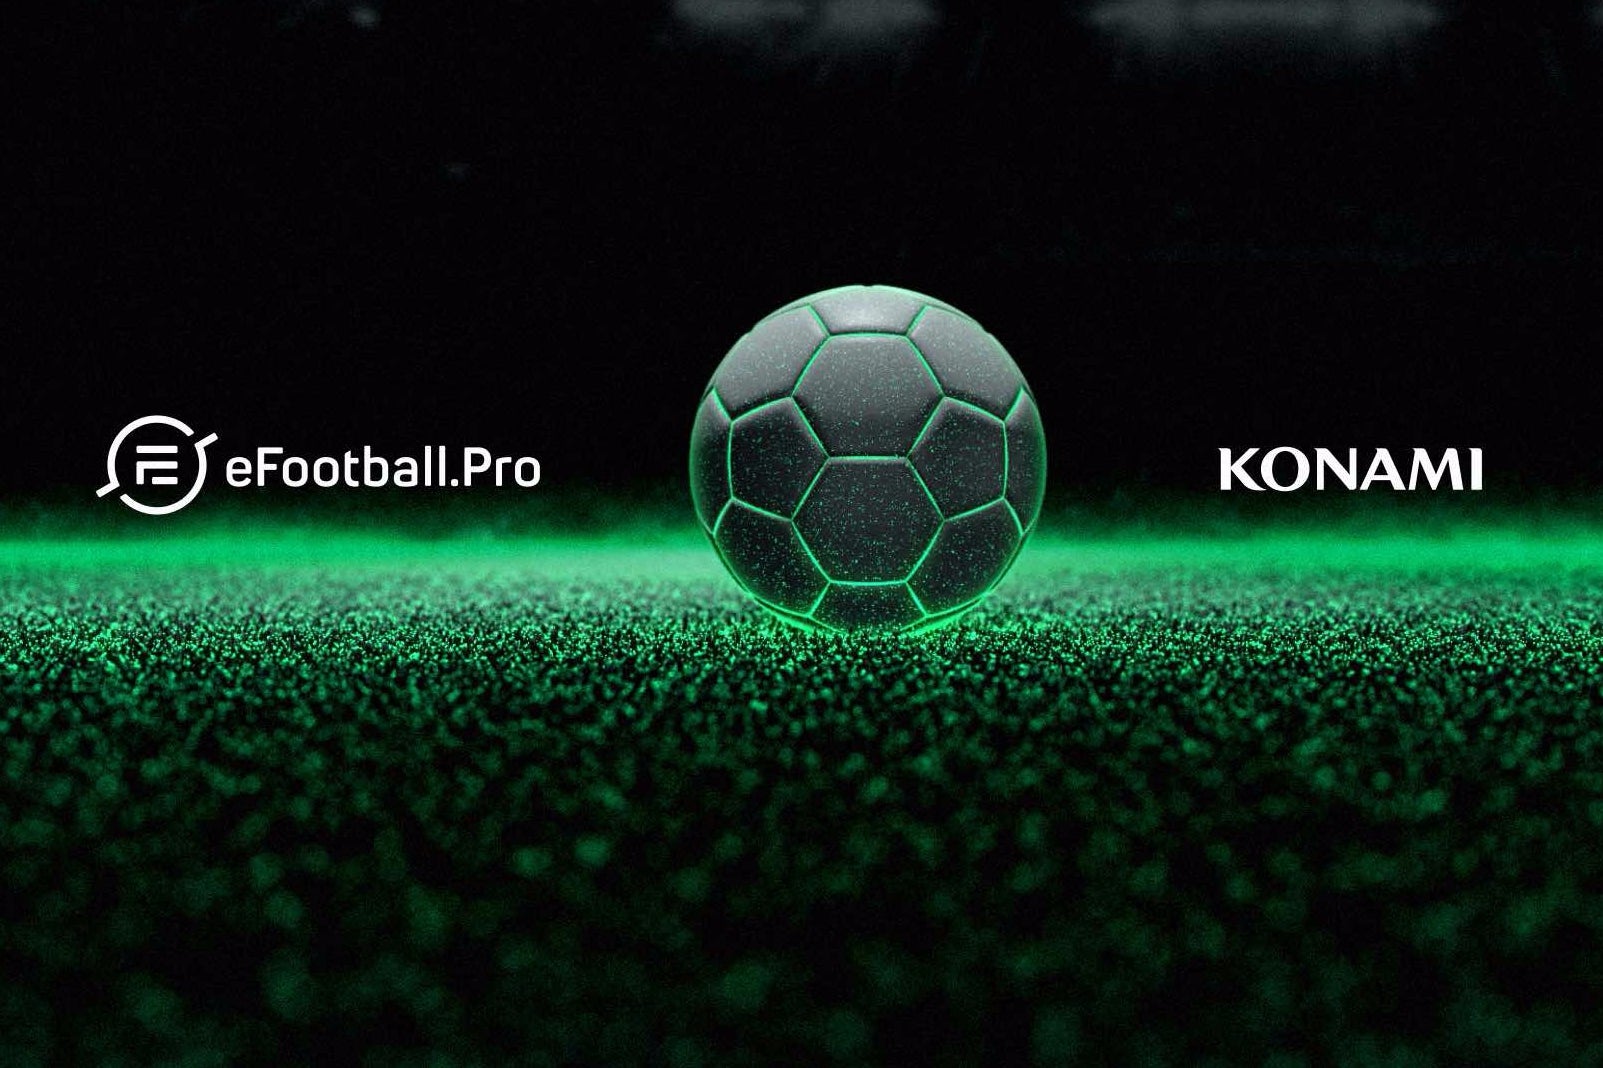 Immagine di Konami e eFootball.Pro insieme per creare una nuova competizione calcistica eSport professionale